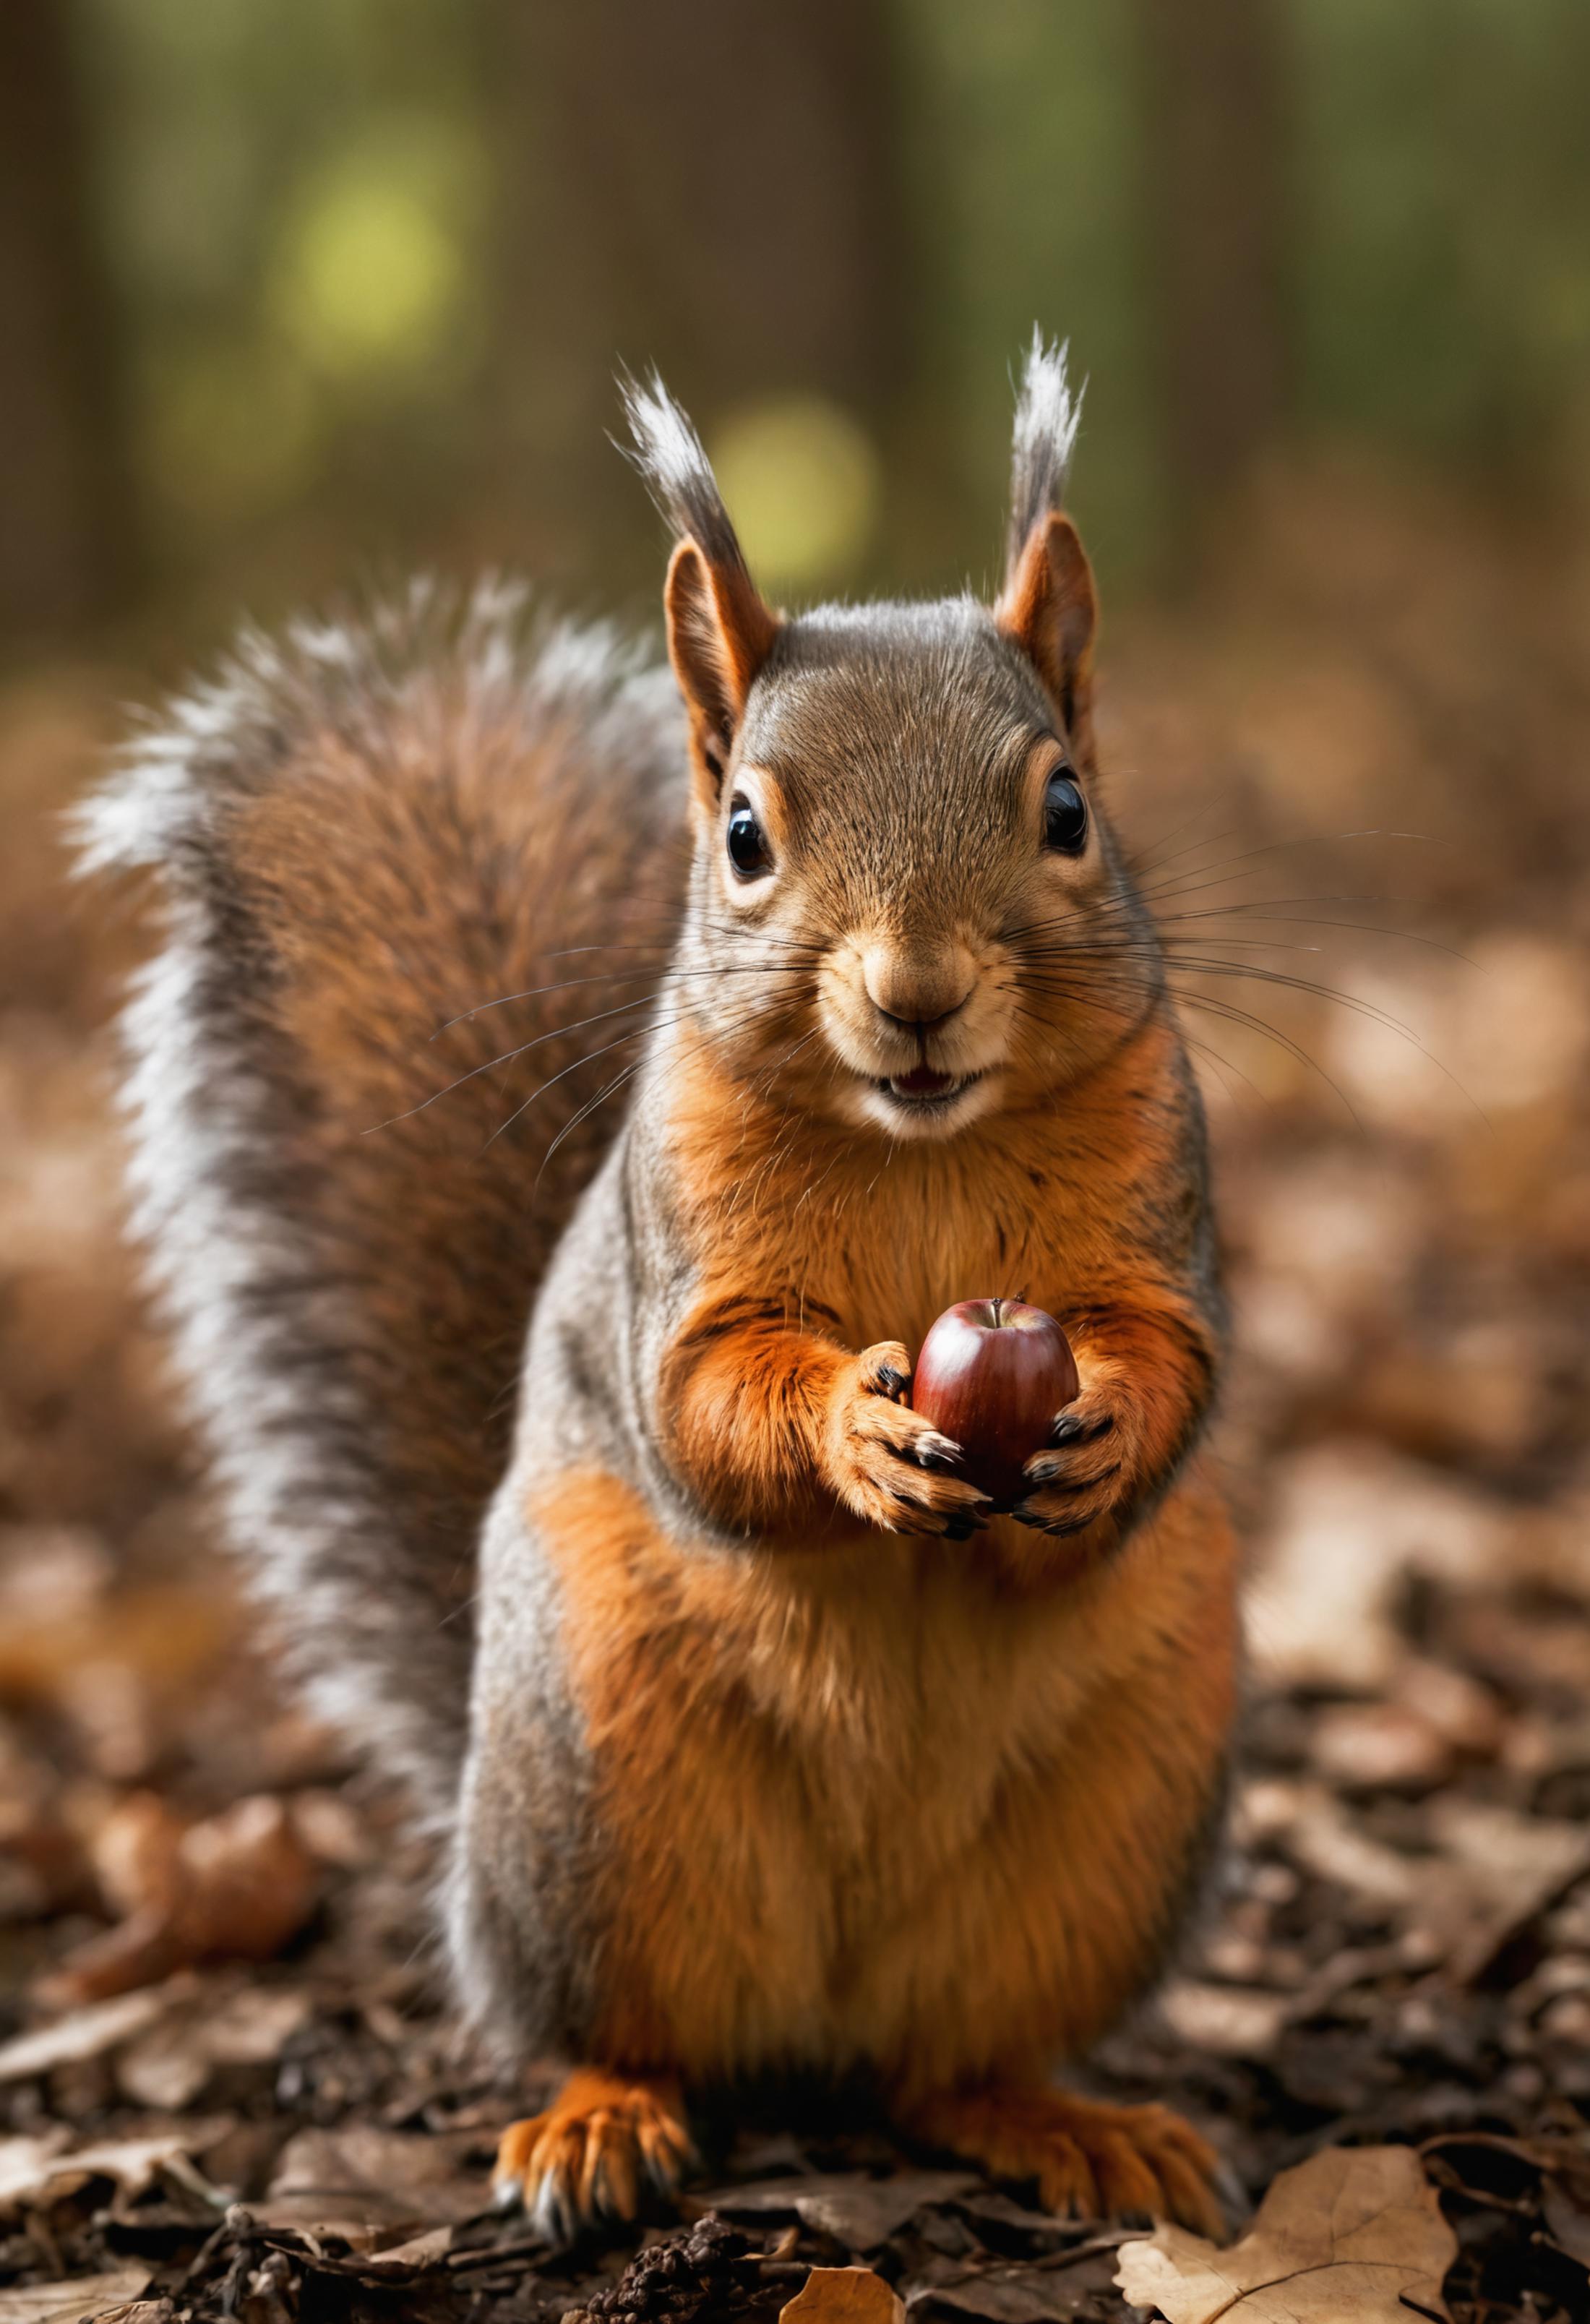 A cute squirrel holding an acorn.